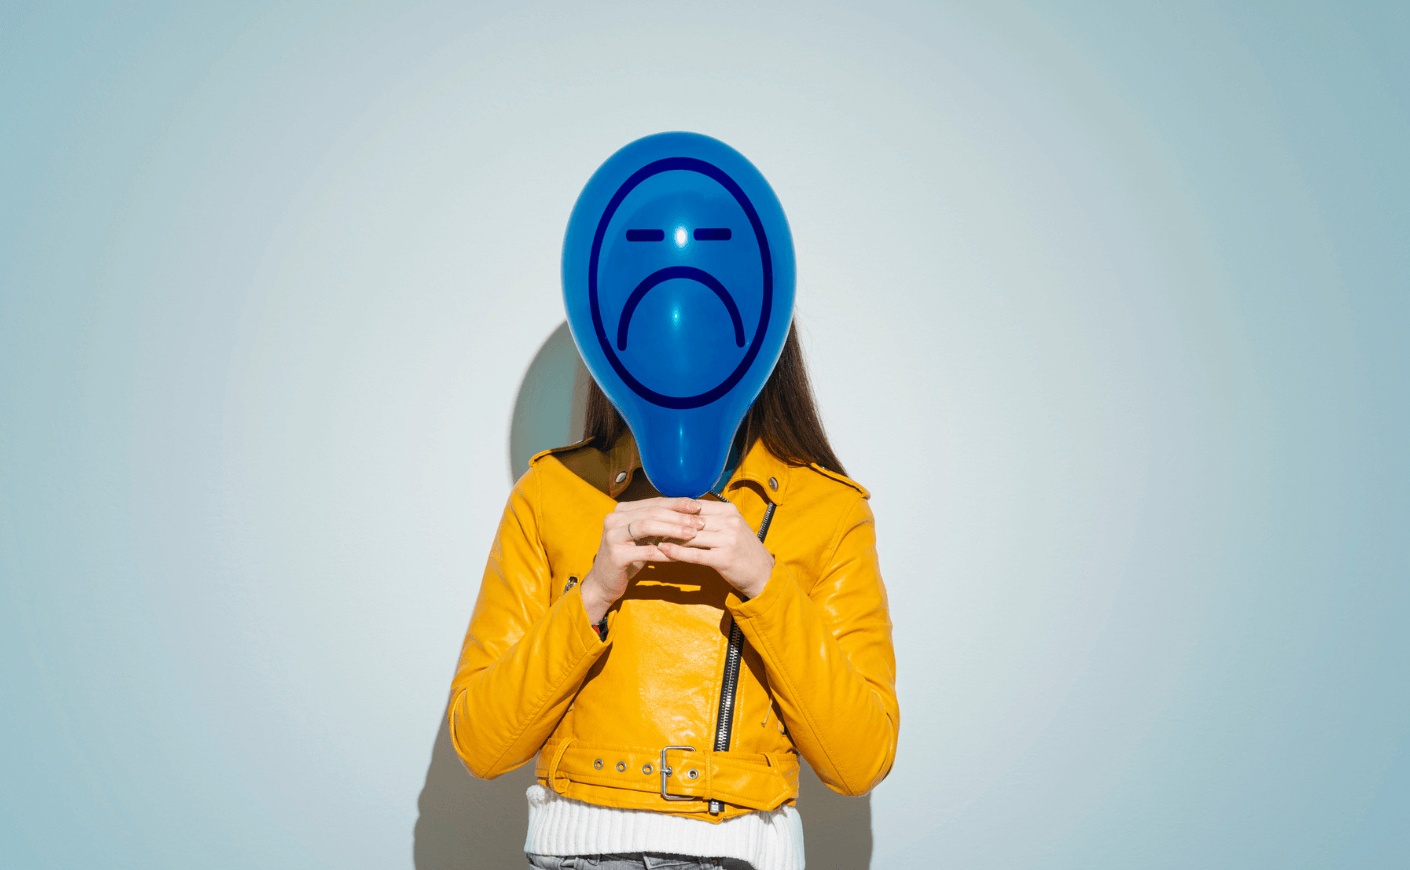 Woman with a sad face balloon